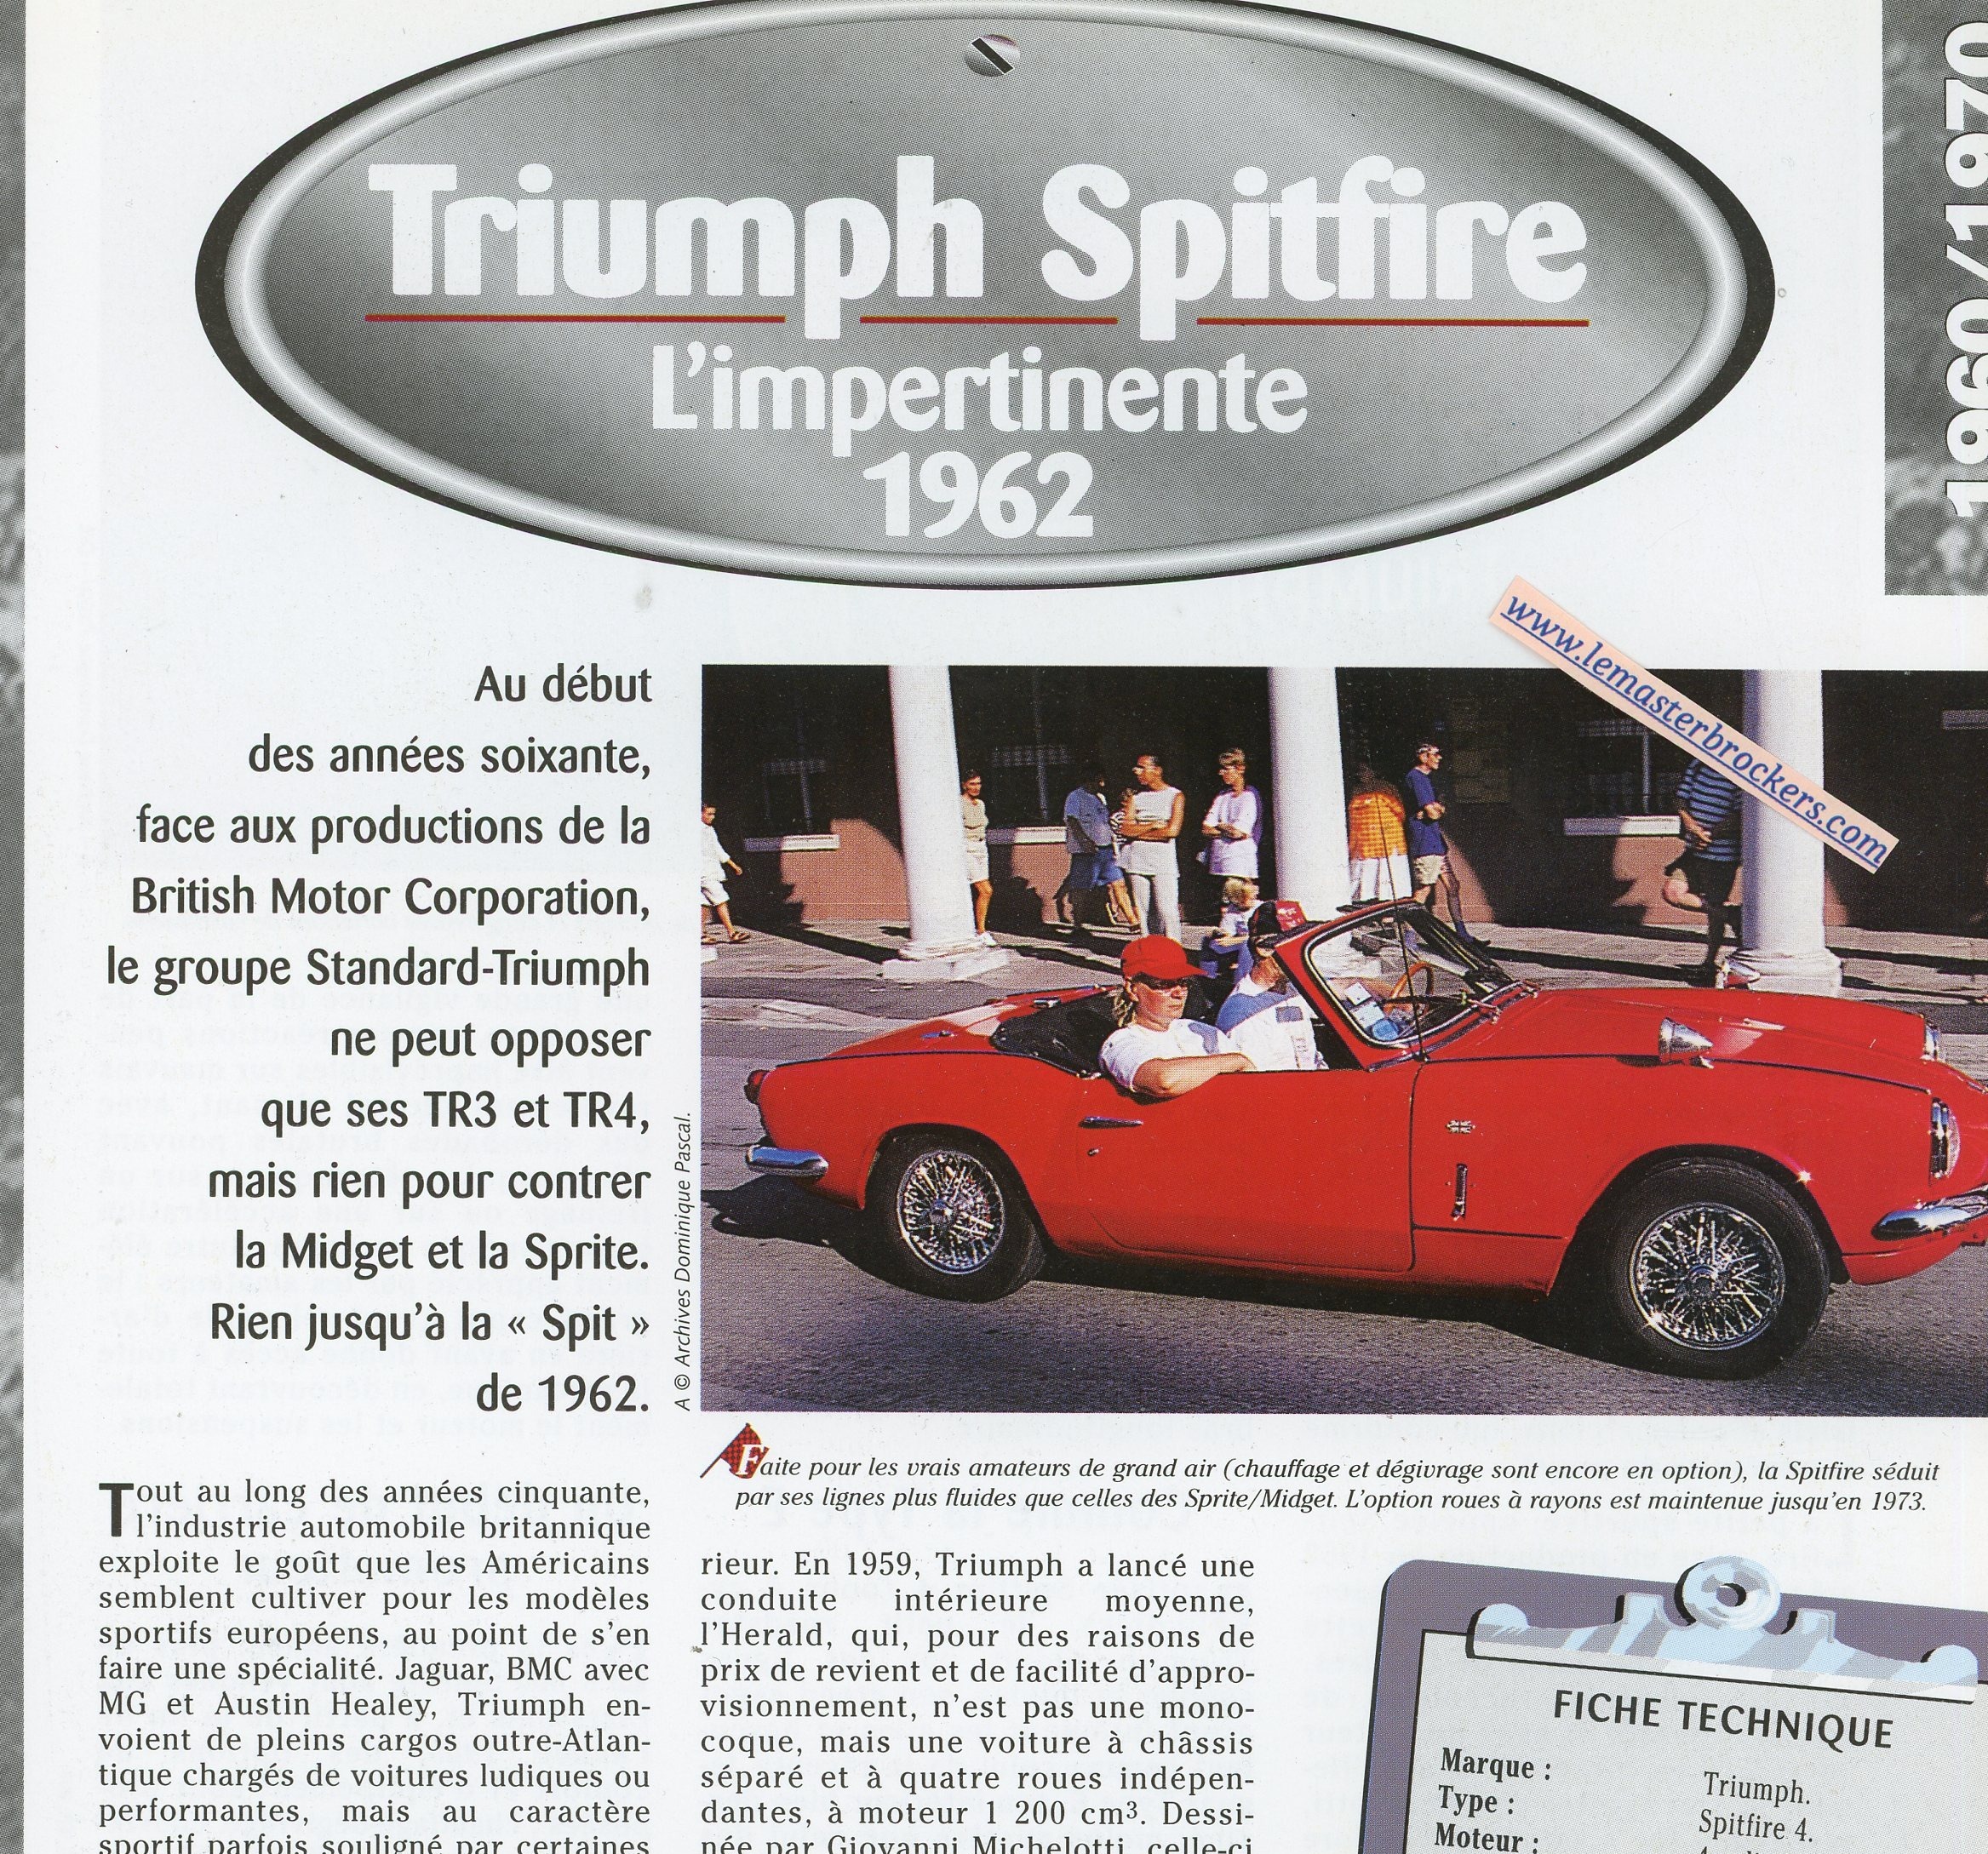 TRIUMPH-SPITFIRE-1962-FICHE-TECHNIQUE-VOITURE-LEMASTERBROCKERS